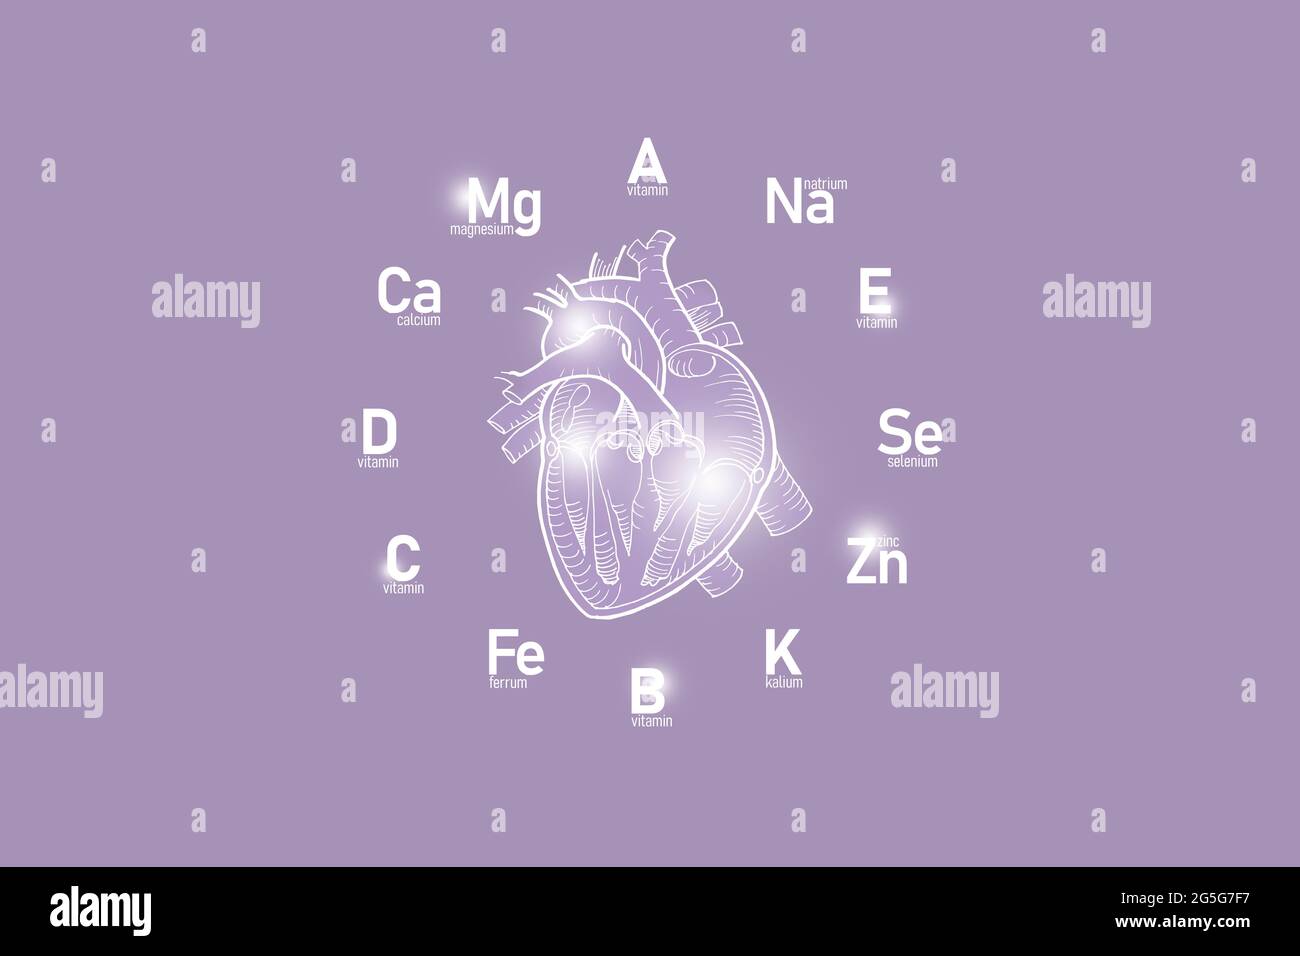 Stilisiertes Ziffernblatt mit lebenswichtigen Vitaminen und Mikroelementen für die menschliche Gesundheit, handgezeichnetes Herz, lilafarbiger Hintergrund. Design-Modell für Gesundheitskonzepte. Stockfoto